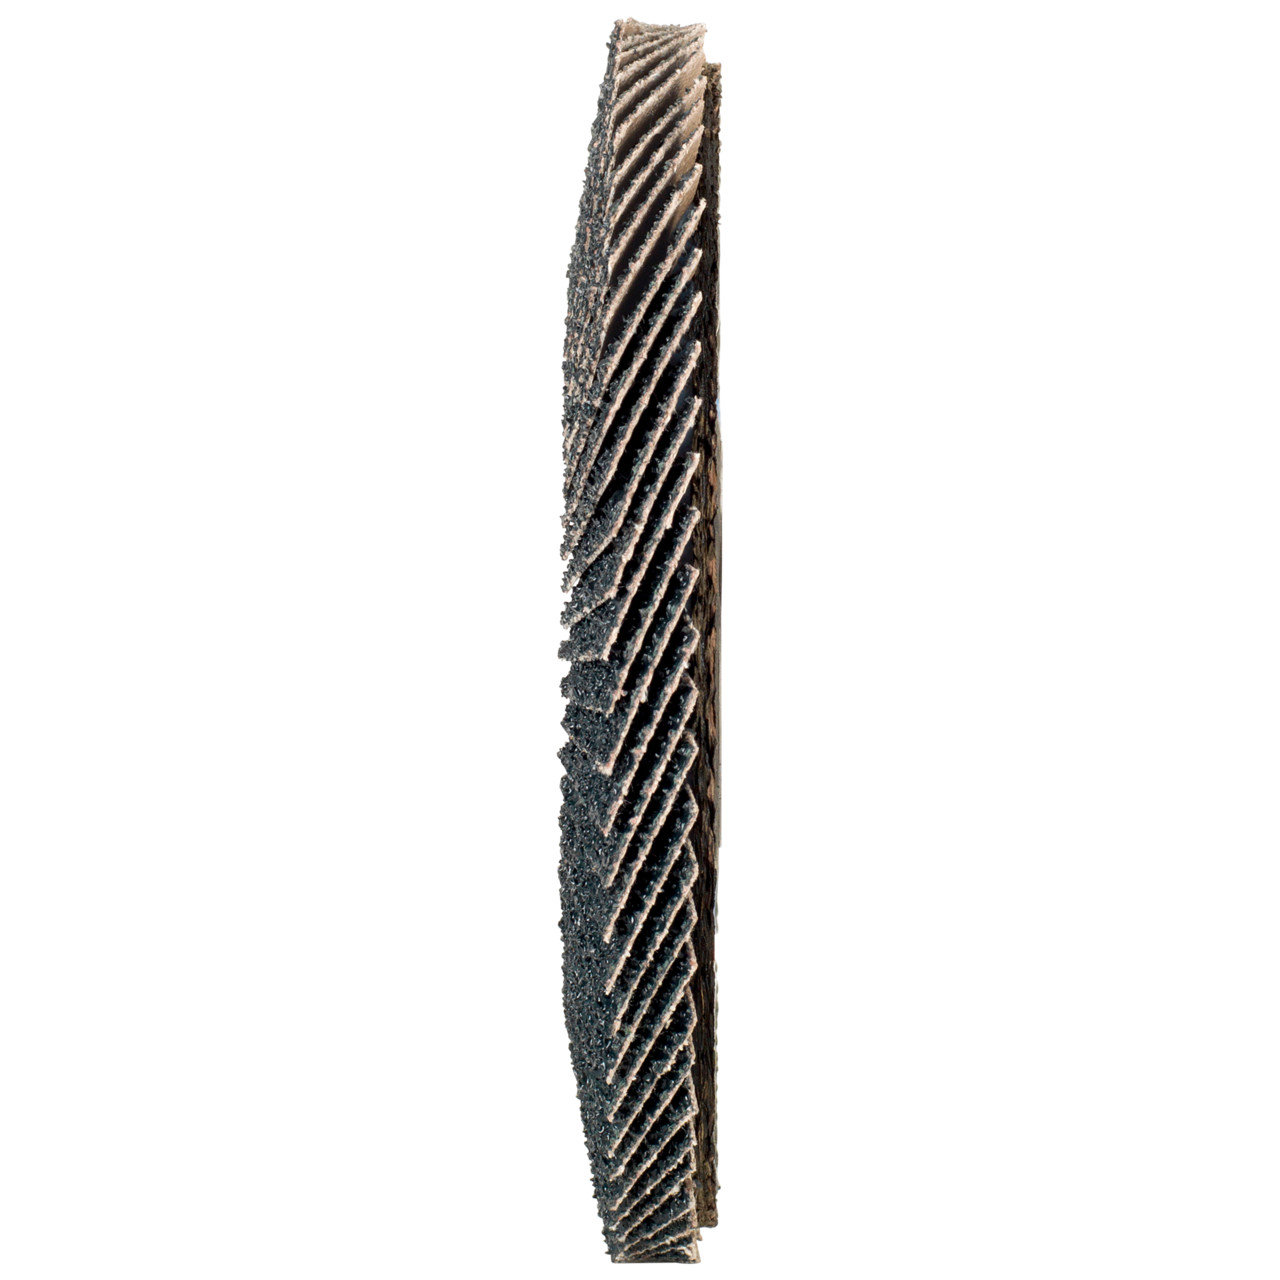 Tyrolit Arandela dentada DxH 178x22,2 2en1 para acero y acero inoxidable, P40, forma: 27A - versión desplazada (versión con cuerpo de soporte de fibra de vidrio), Art. 668670